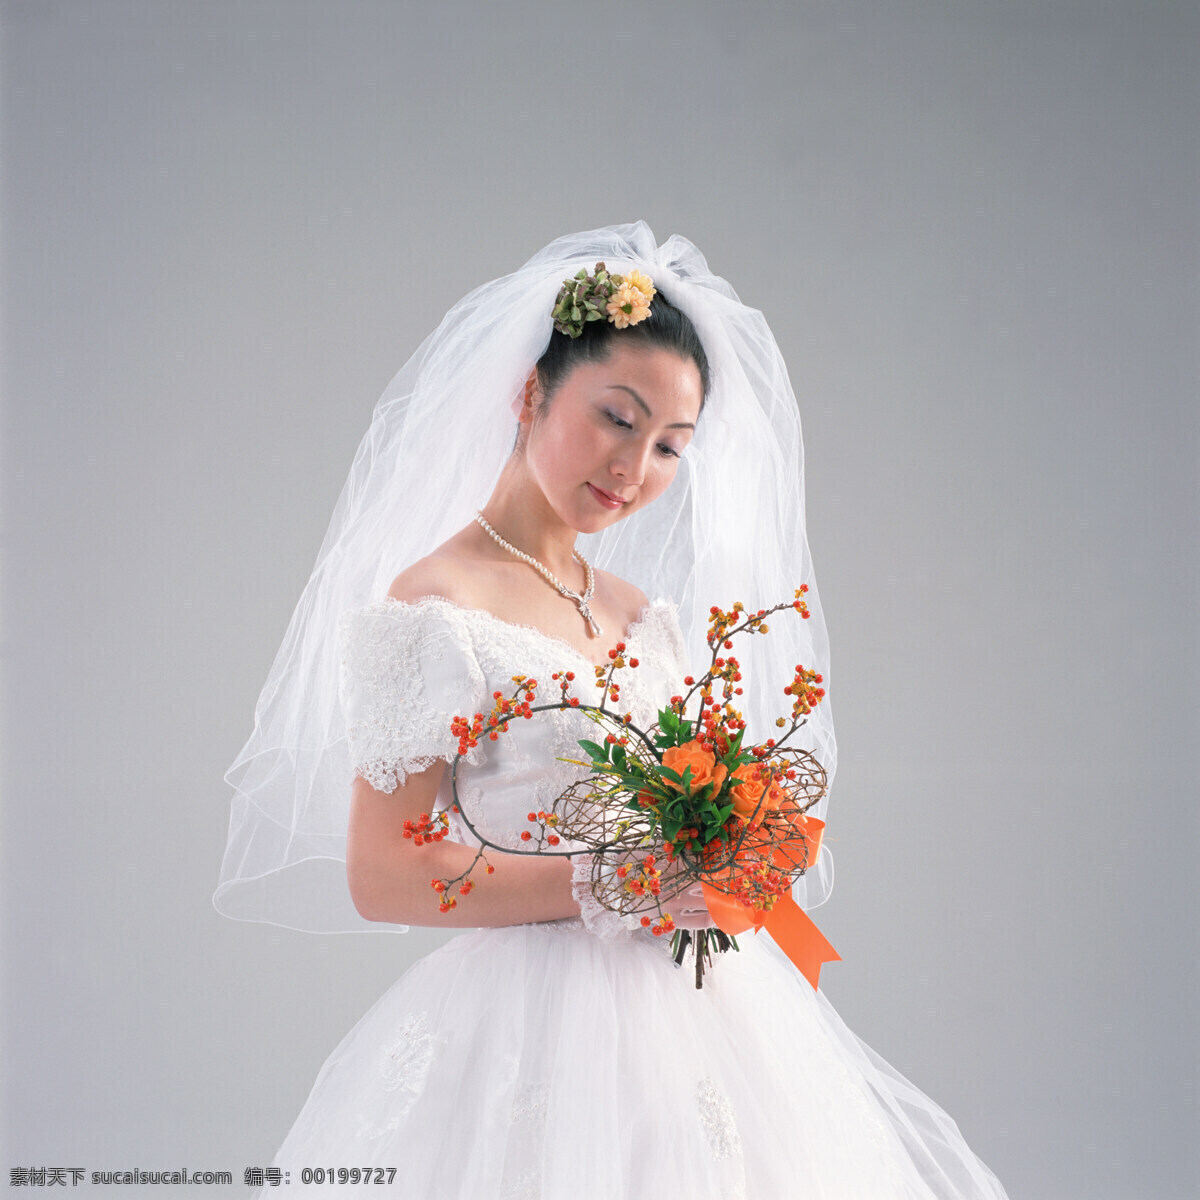 新娘 花篮 美丽新娘 婚纱摄影 美丽的新娘 人物图库 女性女人 摄影图库